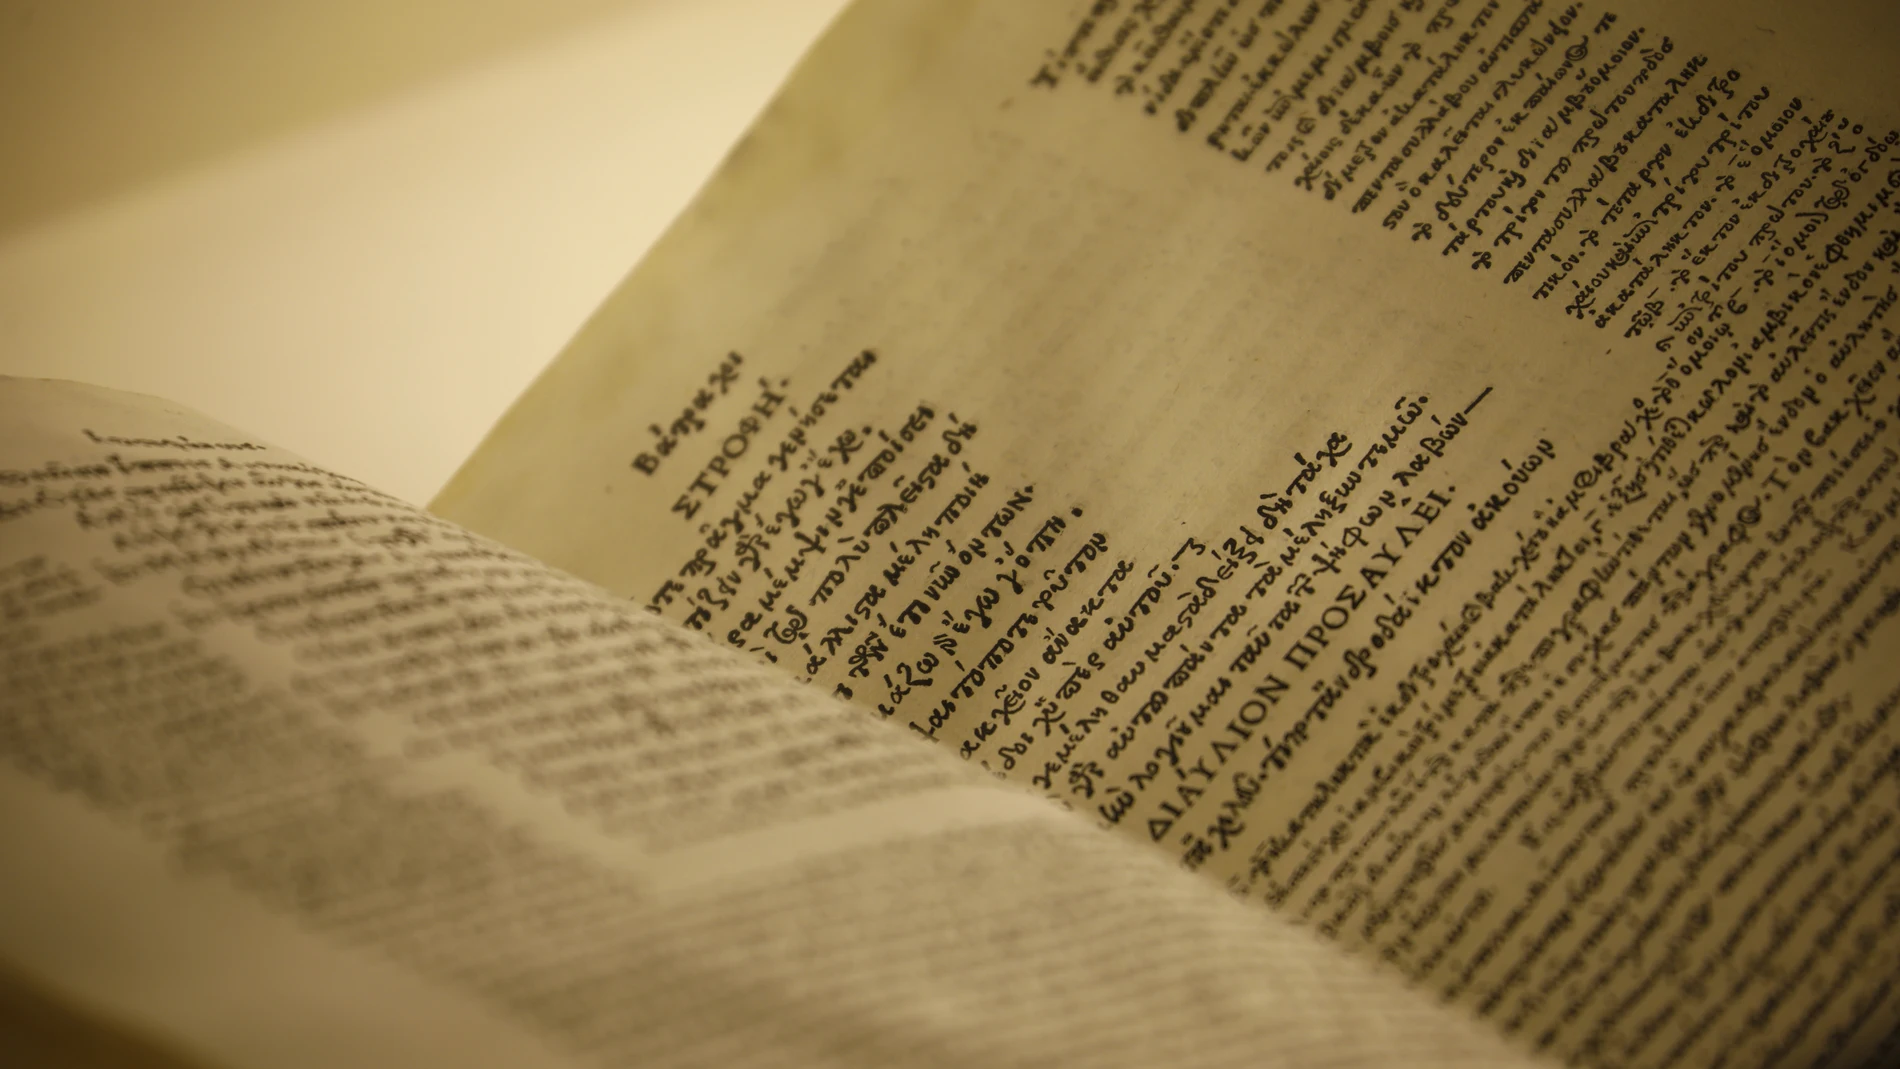 Textos de uno de los libros de la exposición en la Mezquita - Catedral de Córdoba una de las sedes de la exposición